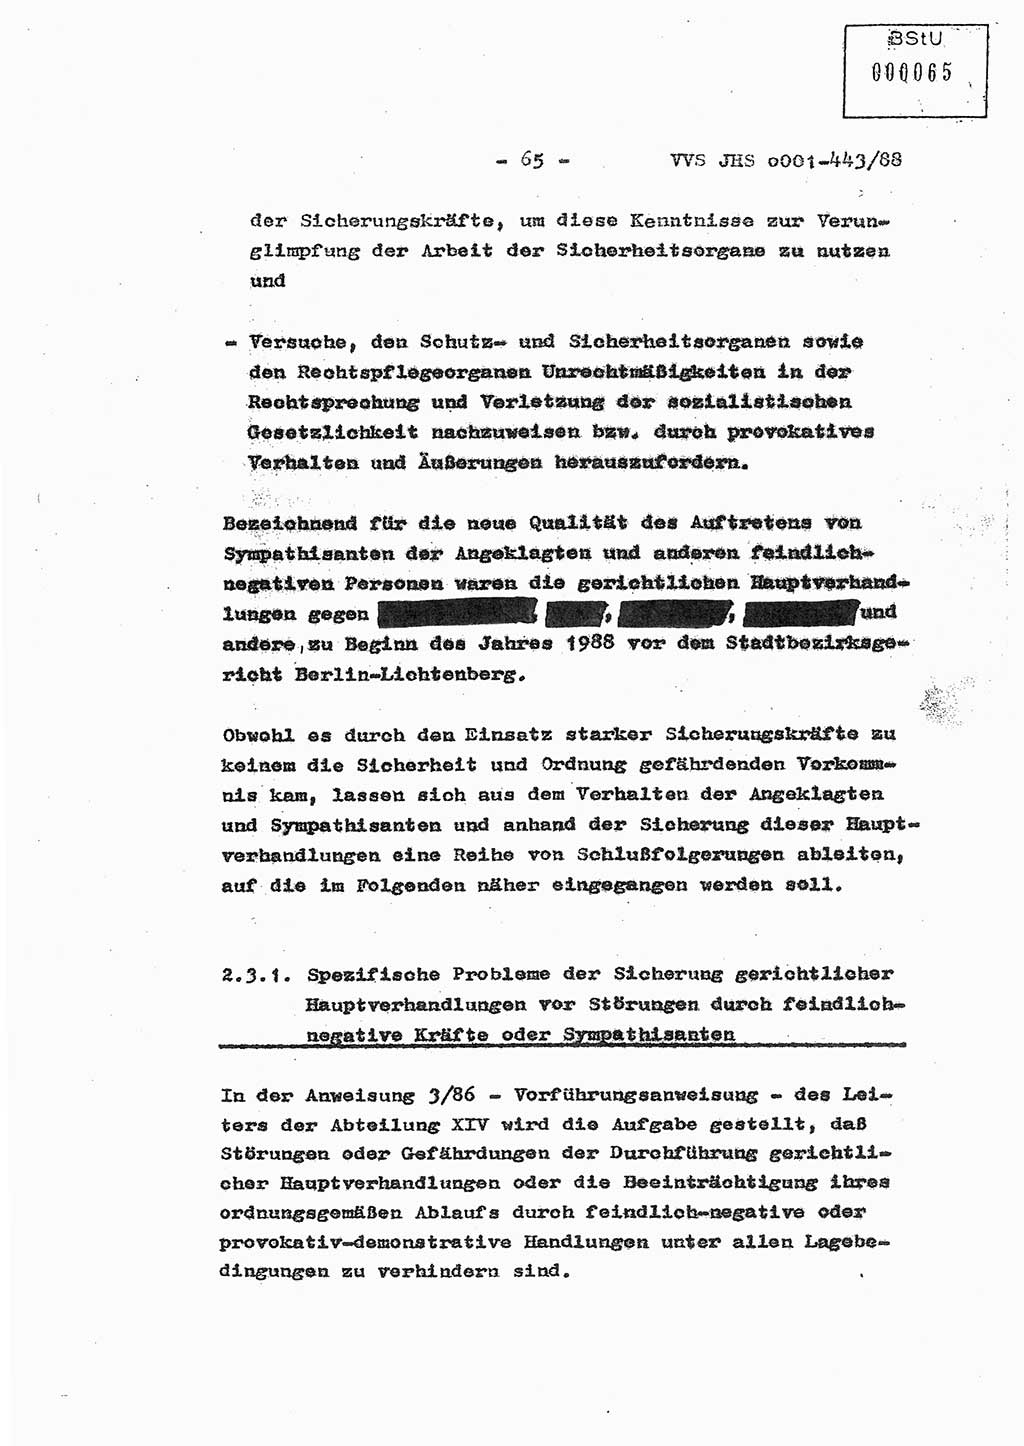 Diplomarbeit Hauptmann Michael Rast (Abt. ⅩⅣ), Major Bernd Rahaus (Abt. ⅩⅣ), Ministerium für Staatssicherheit (MfS) [Deutsche Demokratische Republik (DDR)], Juristische Hochschule (JHS), Vertrauliche Verschlußsache (VVS) o001-443/88, Potsdam 1988, Seite 65 (Dipl.-Arb. MfS DDR JHS VVS o001-443/88 1988, S. 65)